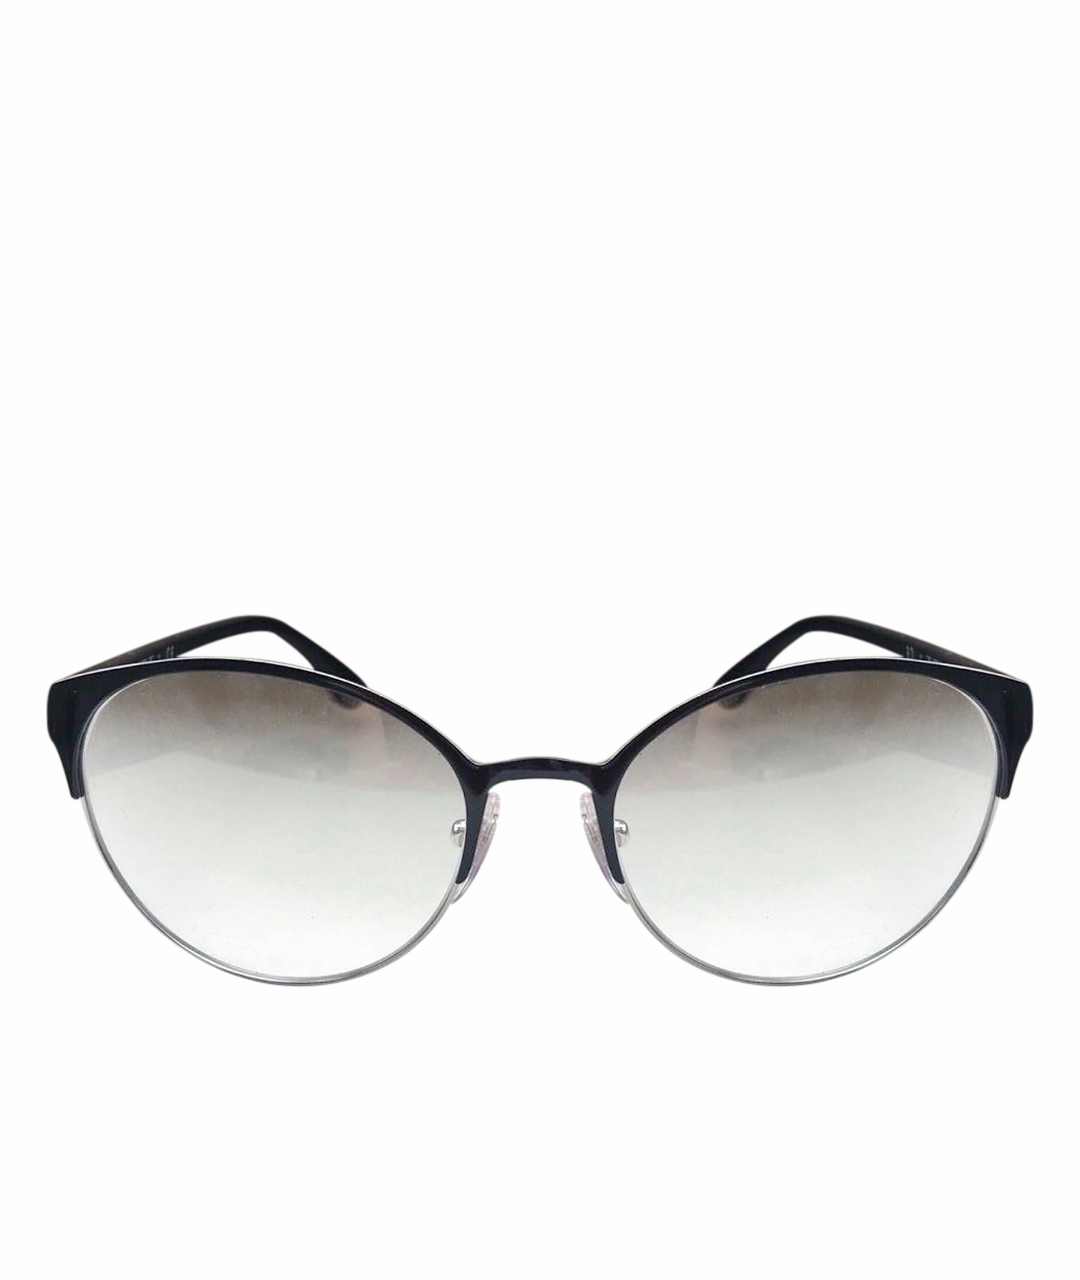 VOGUE EYEWEAR Черные металлические солнцезащитные очки, фото 1